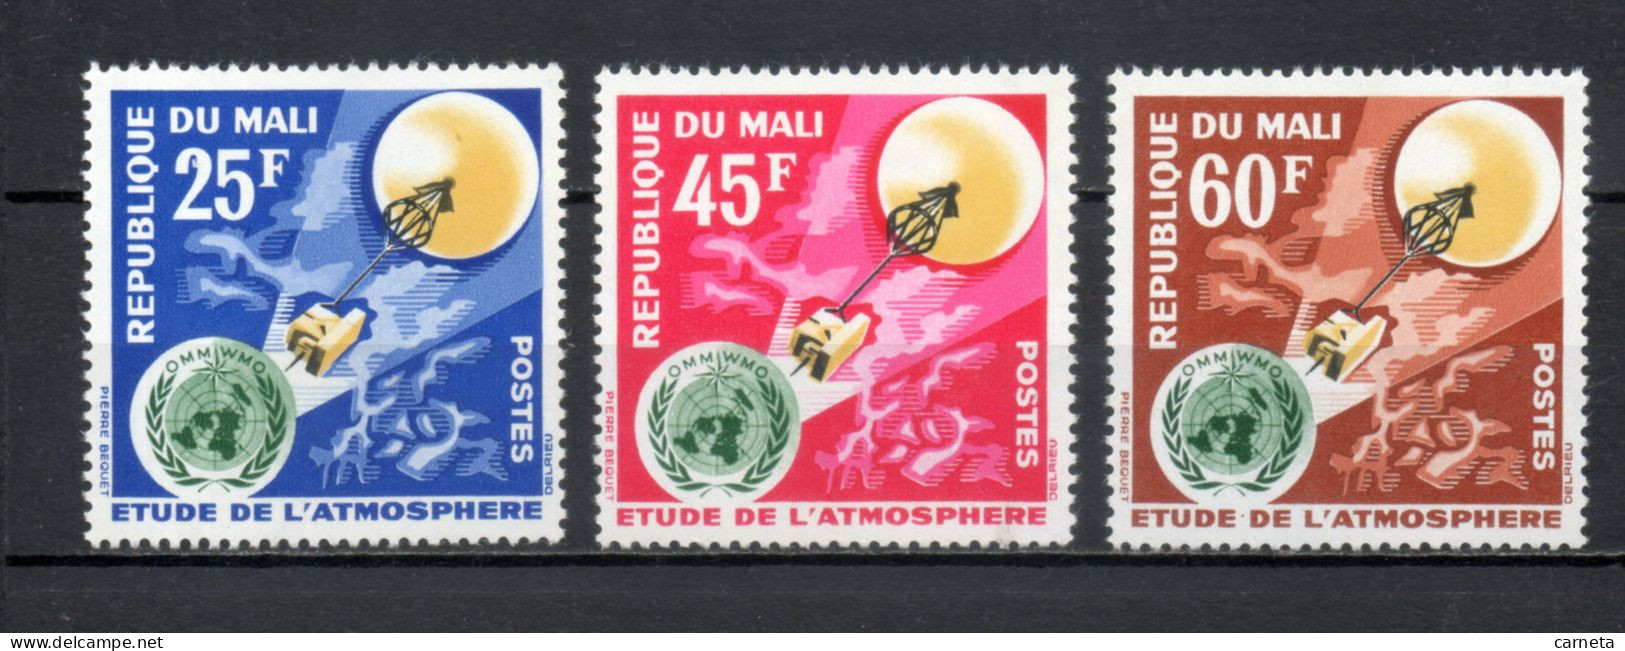 MALI  N° 47 à 49   NEUFS SANS CHARNIERE  COTE 3.50€    ESPACE ATMOSPHERE  VOIR DESCRIPTION - Mali (1959-...)